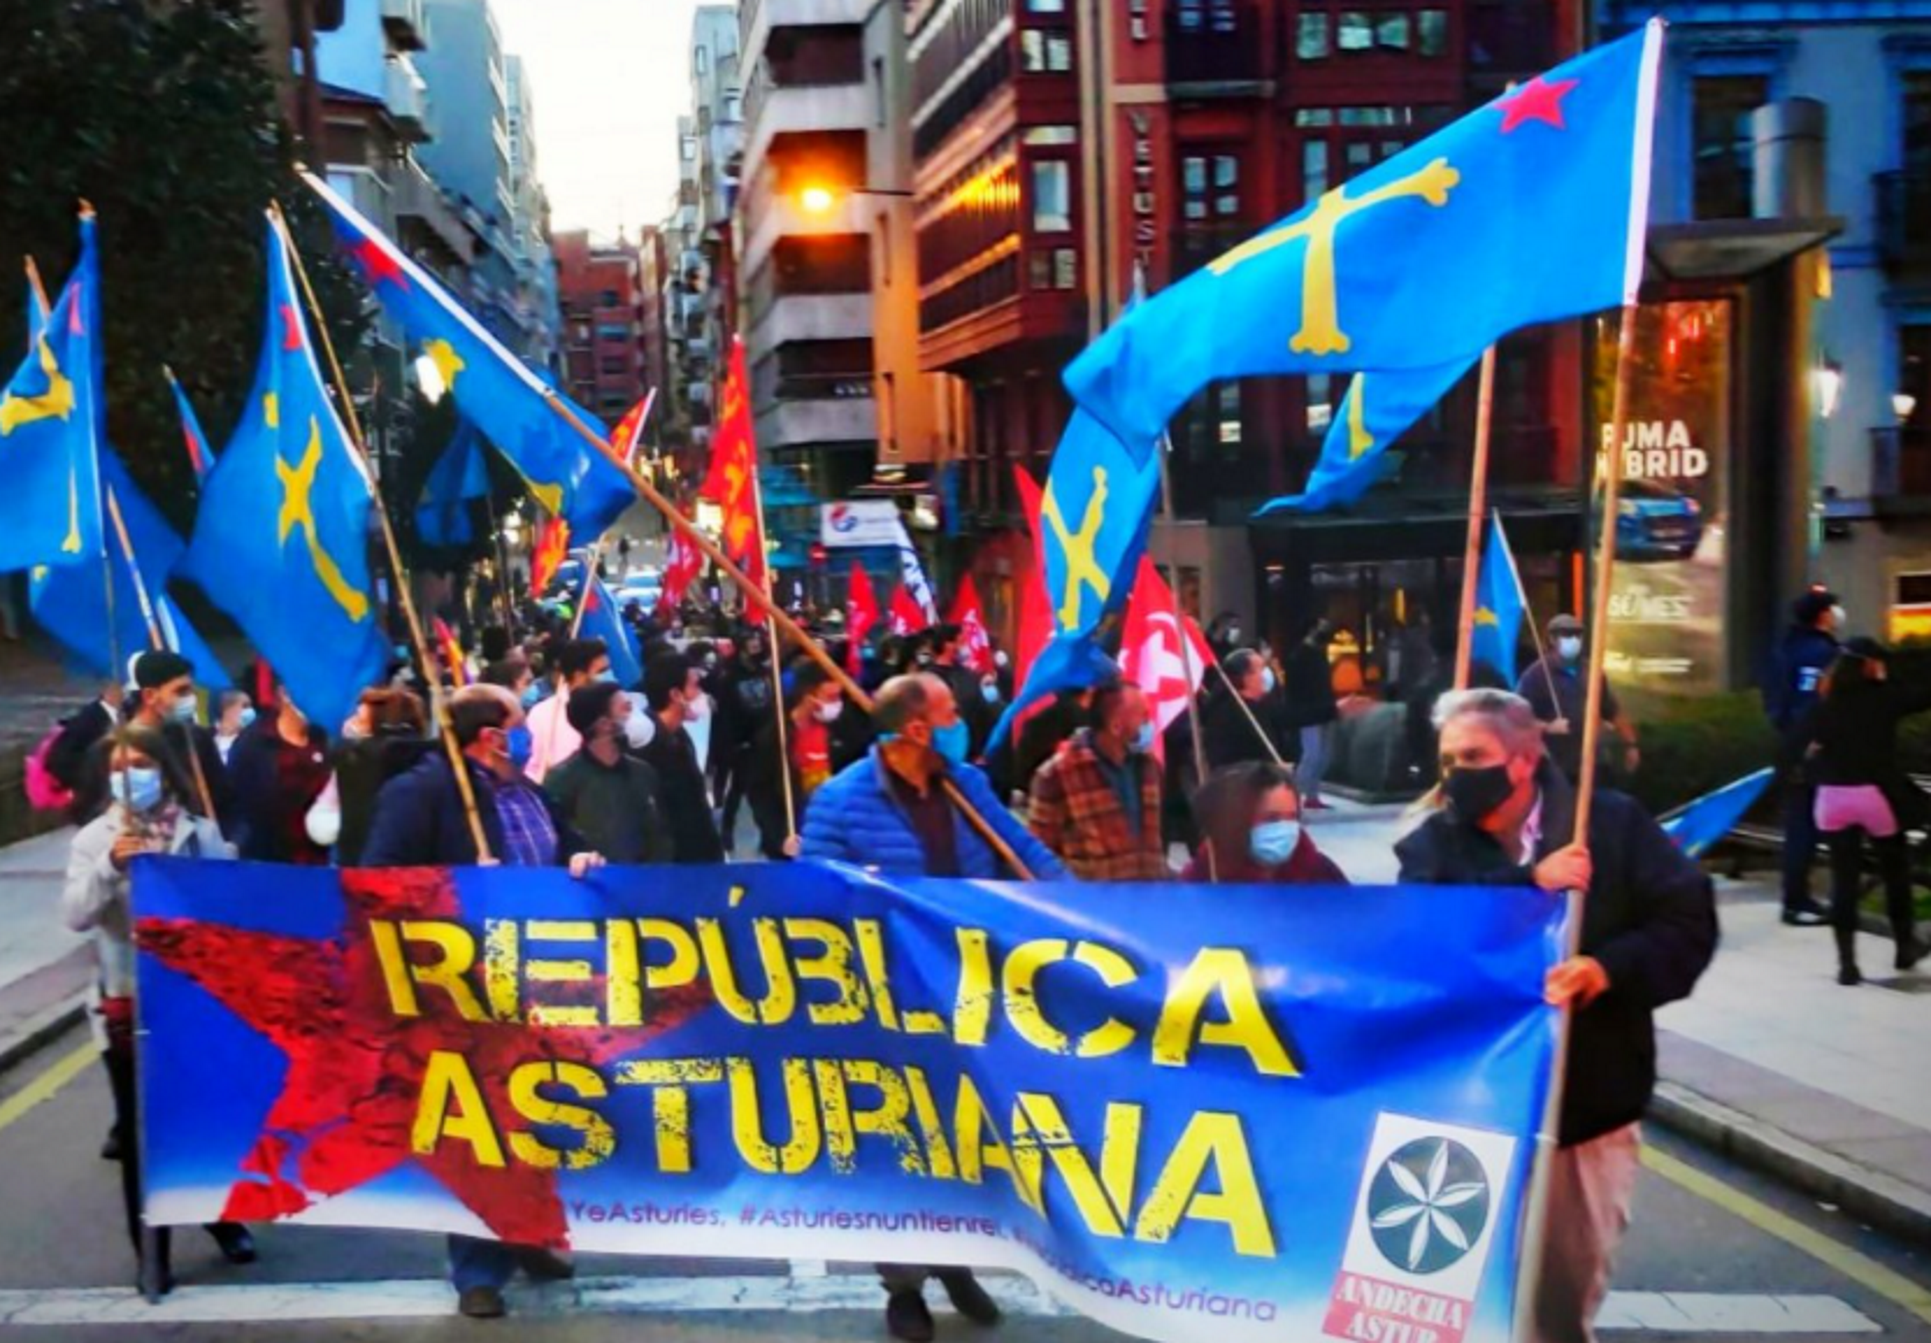 El asturiano gana terreno como idioma (y Rosa Díez pierde los papeles)